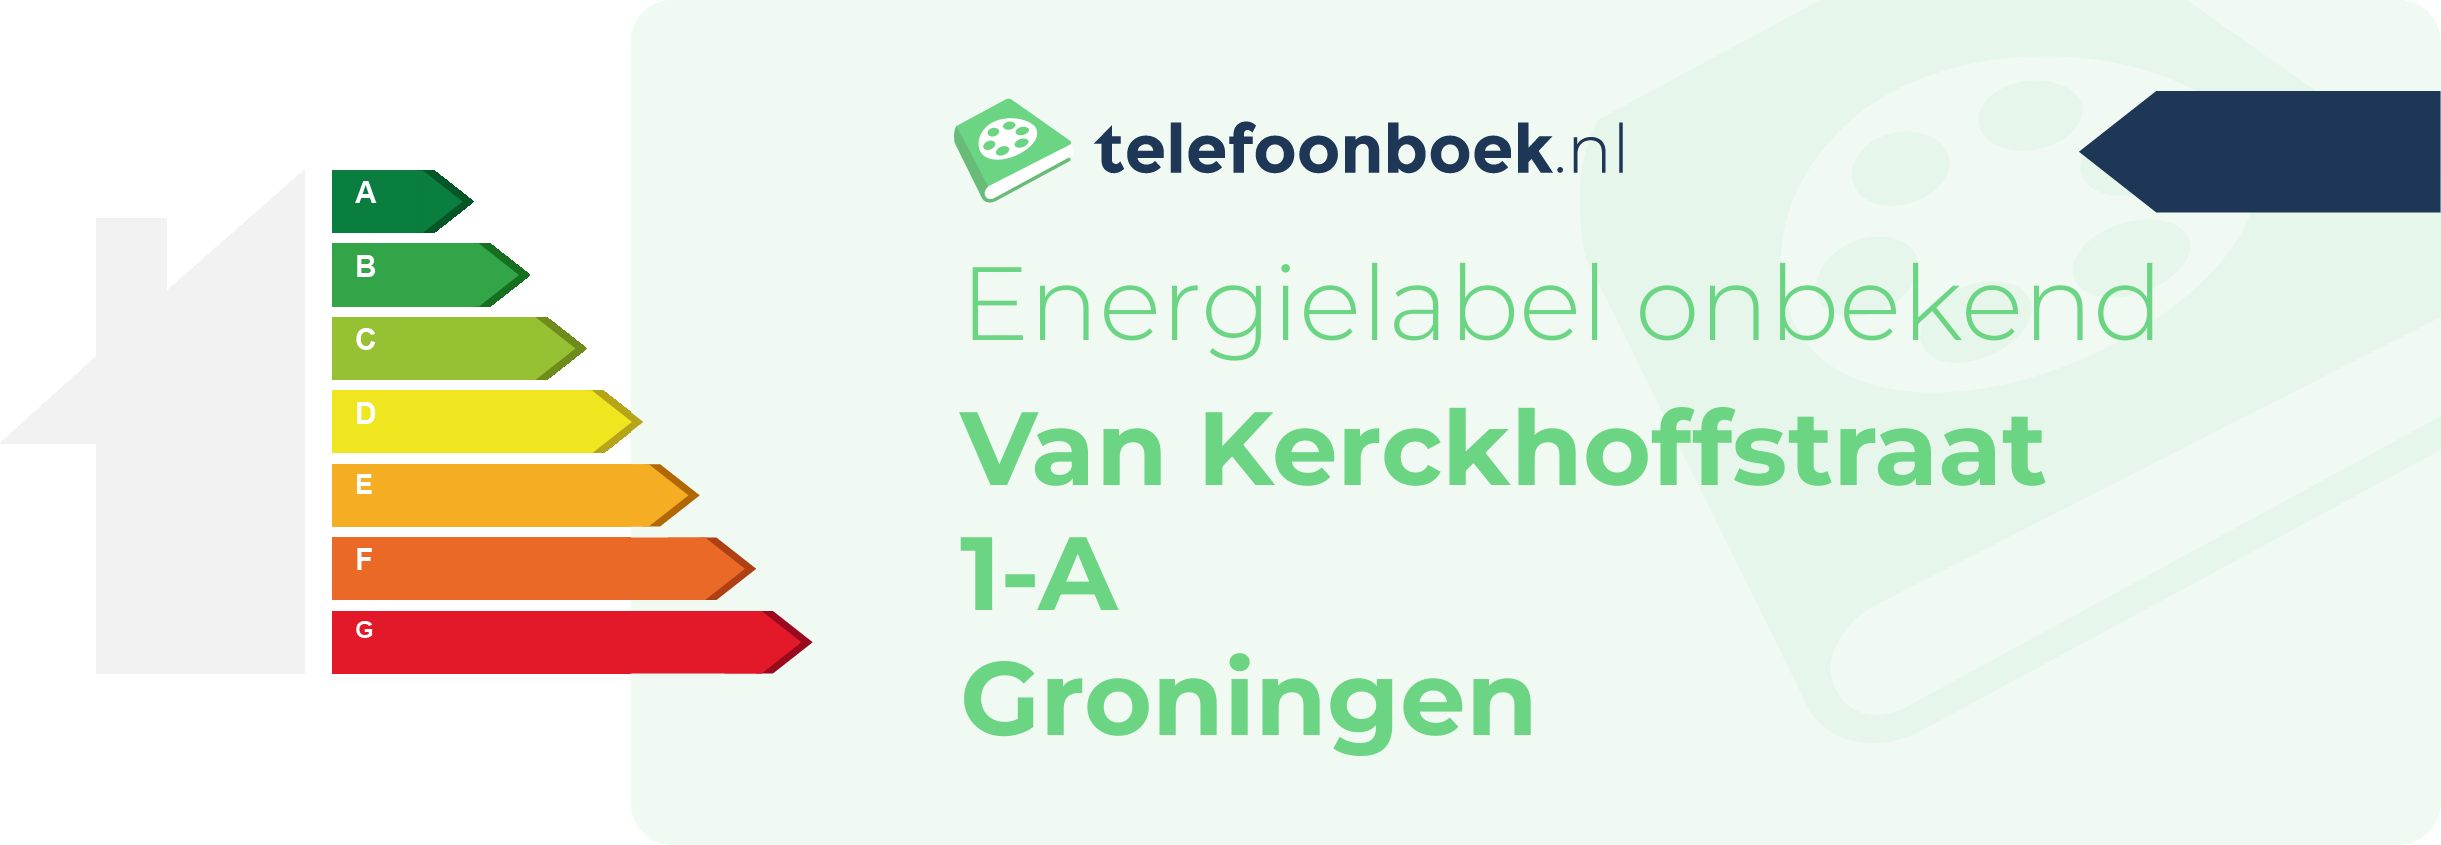 Energielabel Van Kerckhoffstraat 1-A Groningen